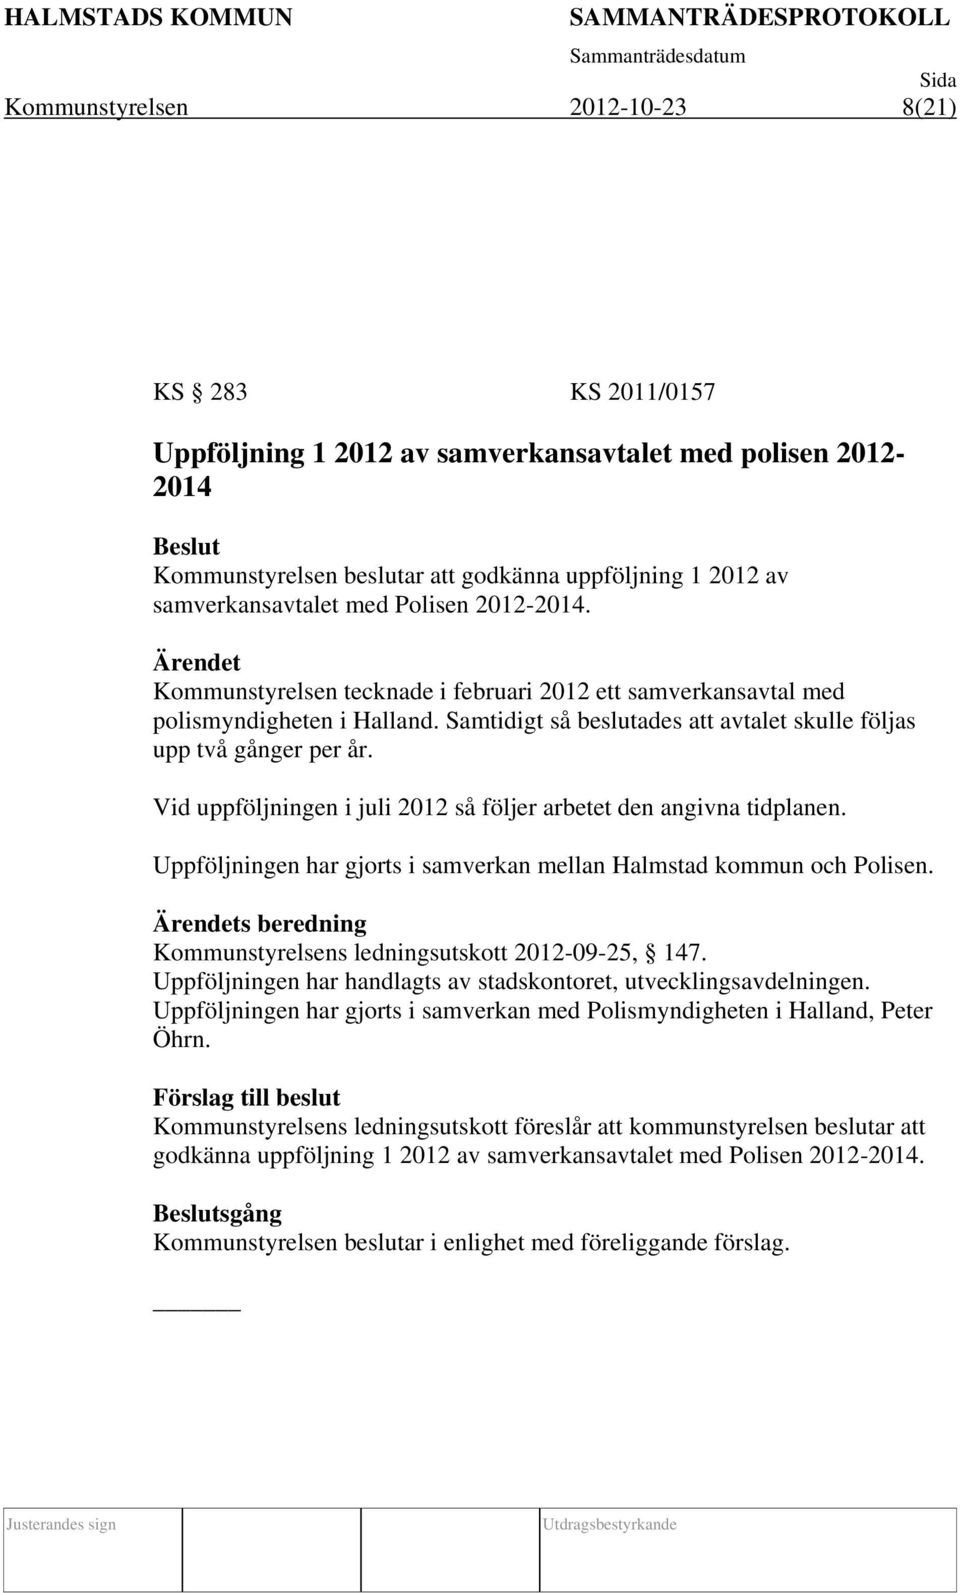 Vid uppföljningen i juli 2012 så följer arbetet den angivna tidplanen. Uppföljningen har gjorts i samverkan mellan Halmstad kommun och Polisen.